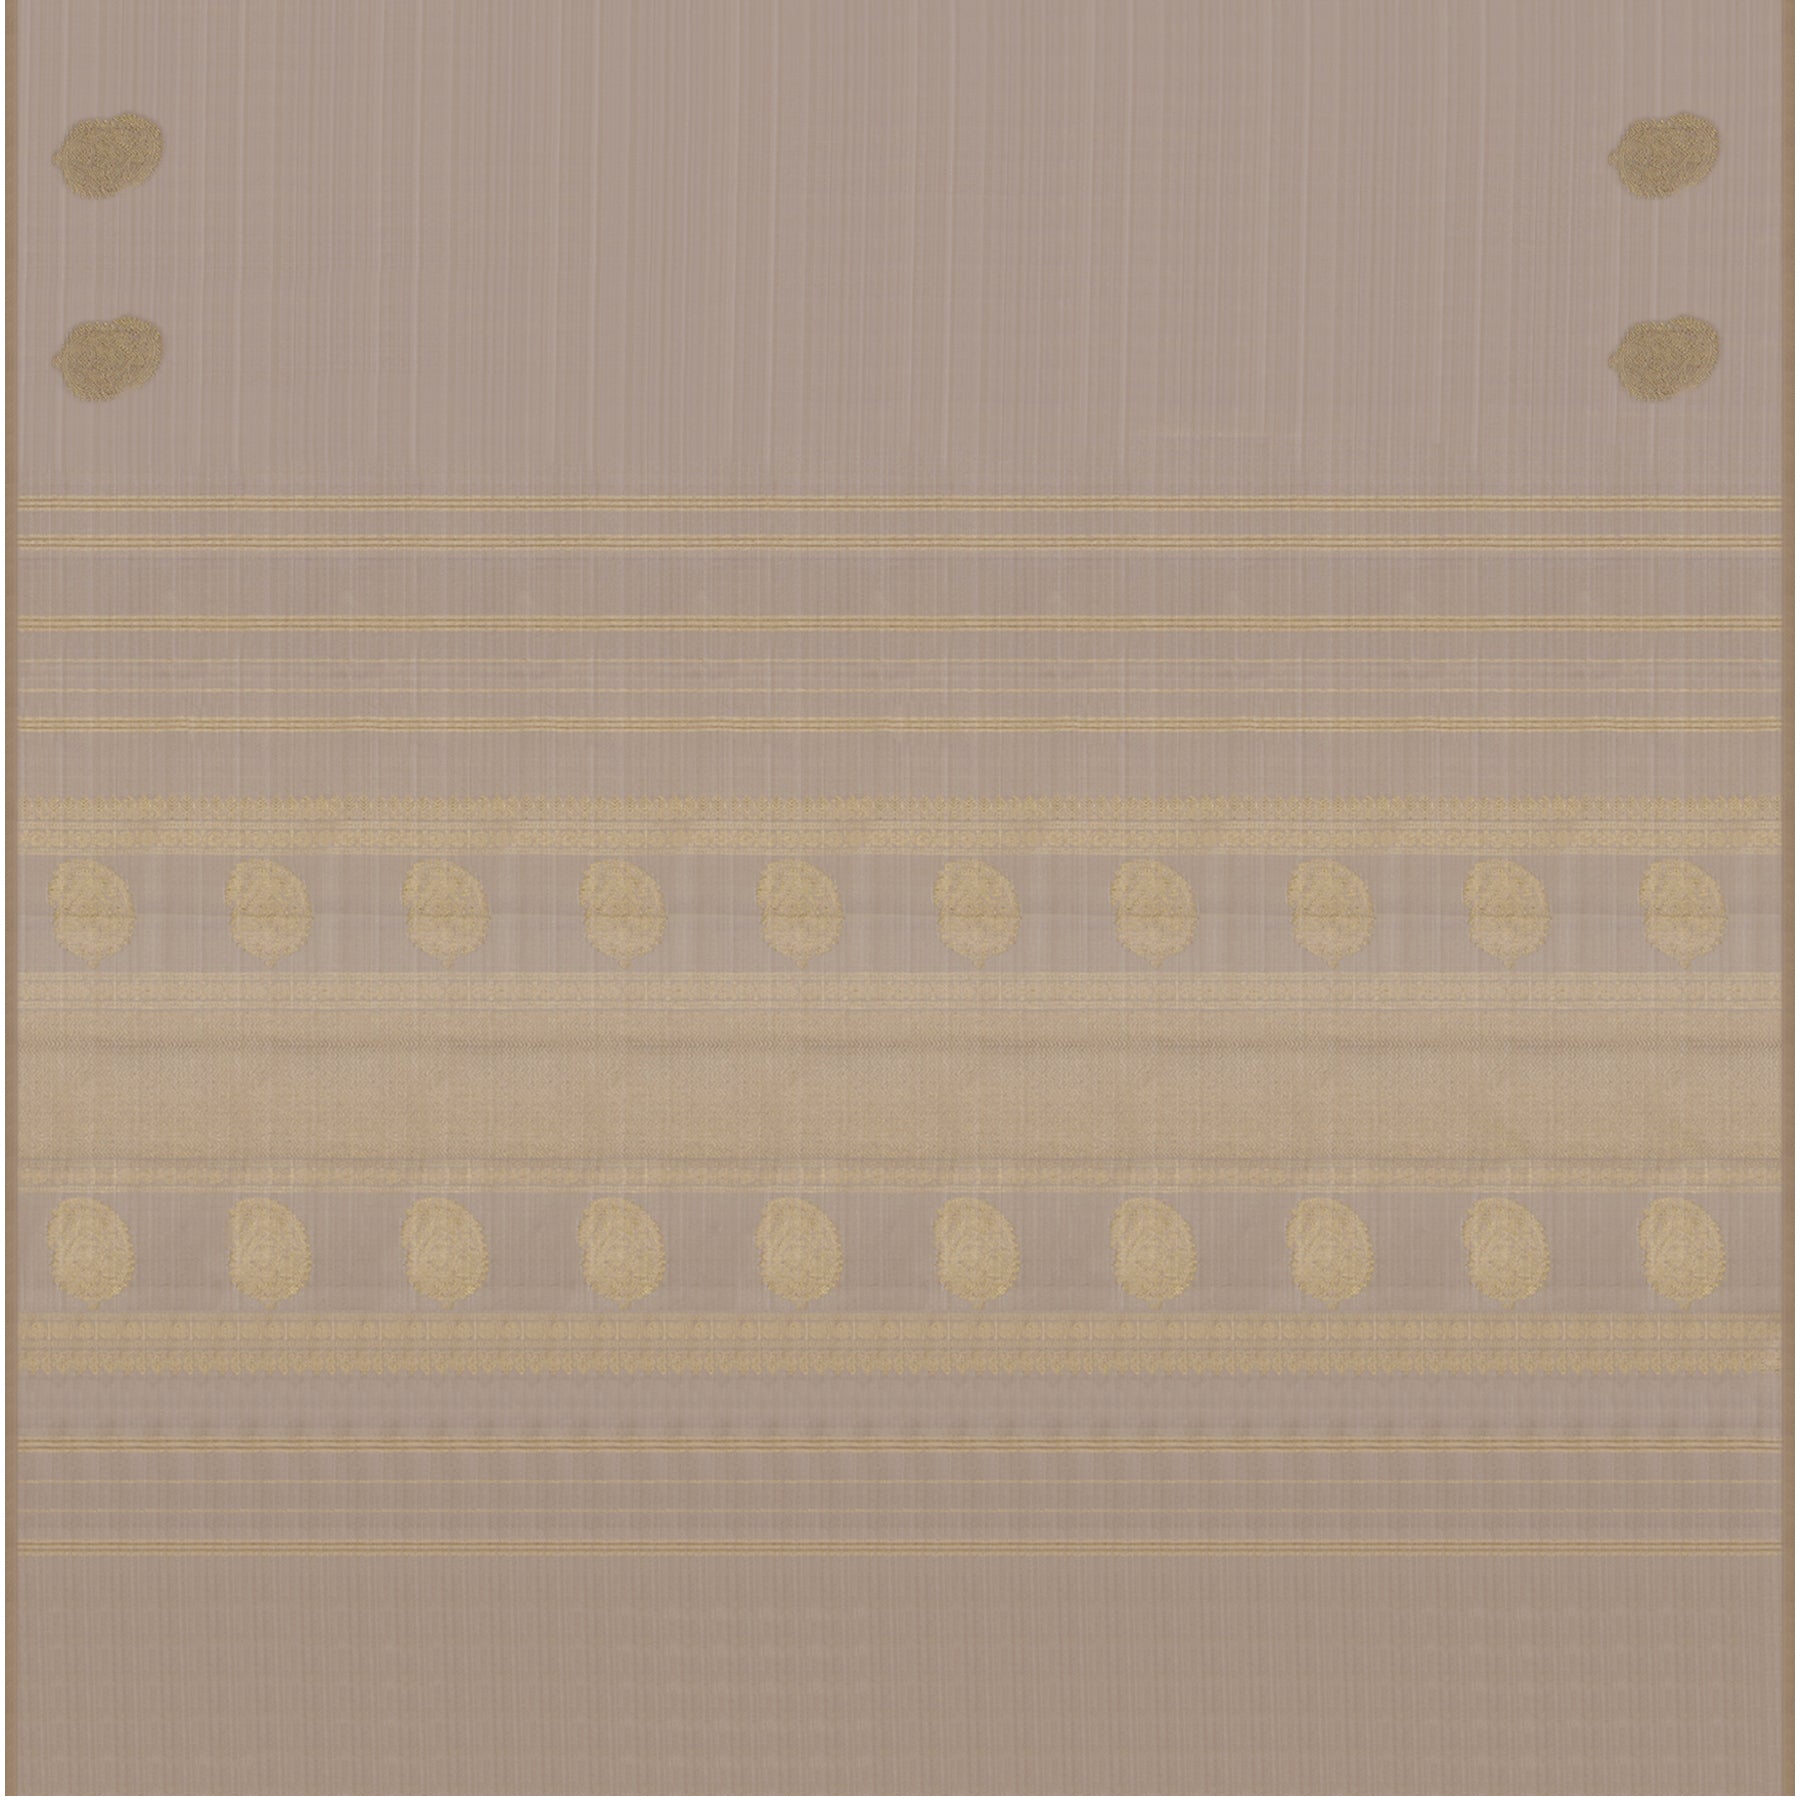 Kanakavalli Kanjivaram Silk Sari 24-595-HS001-00088 - Full View